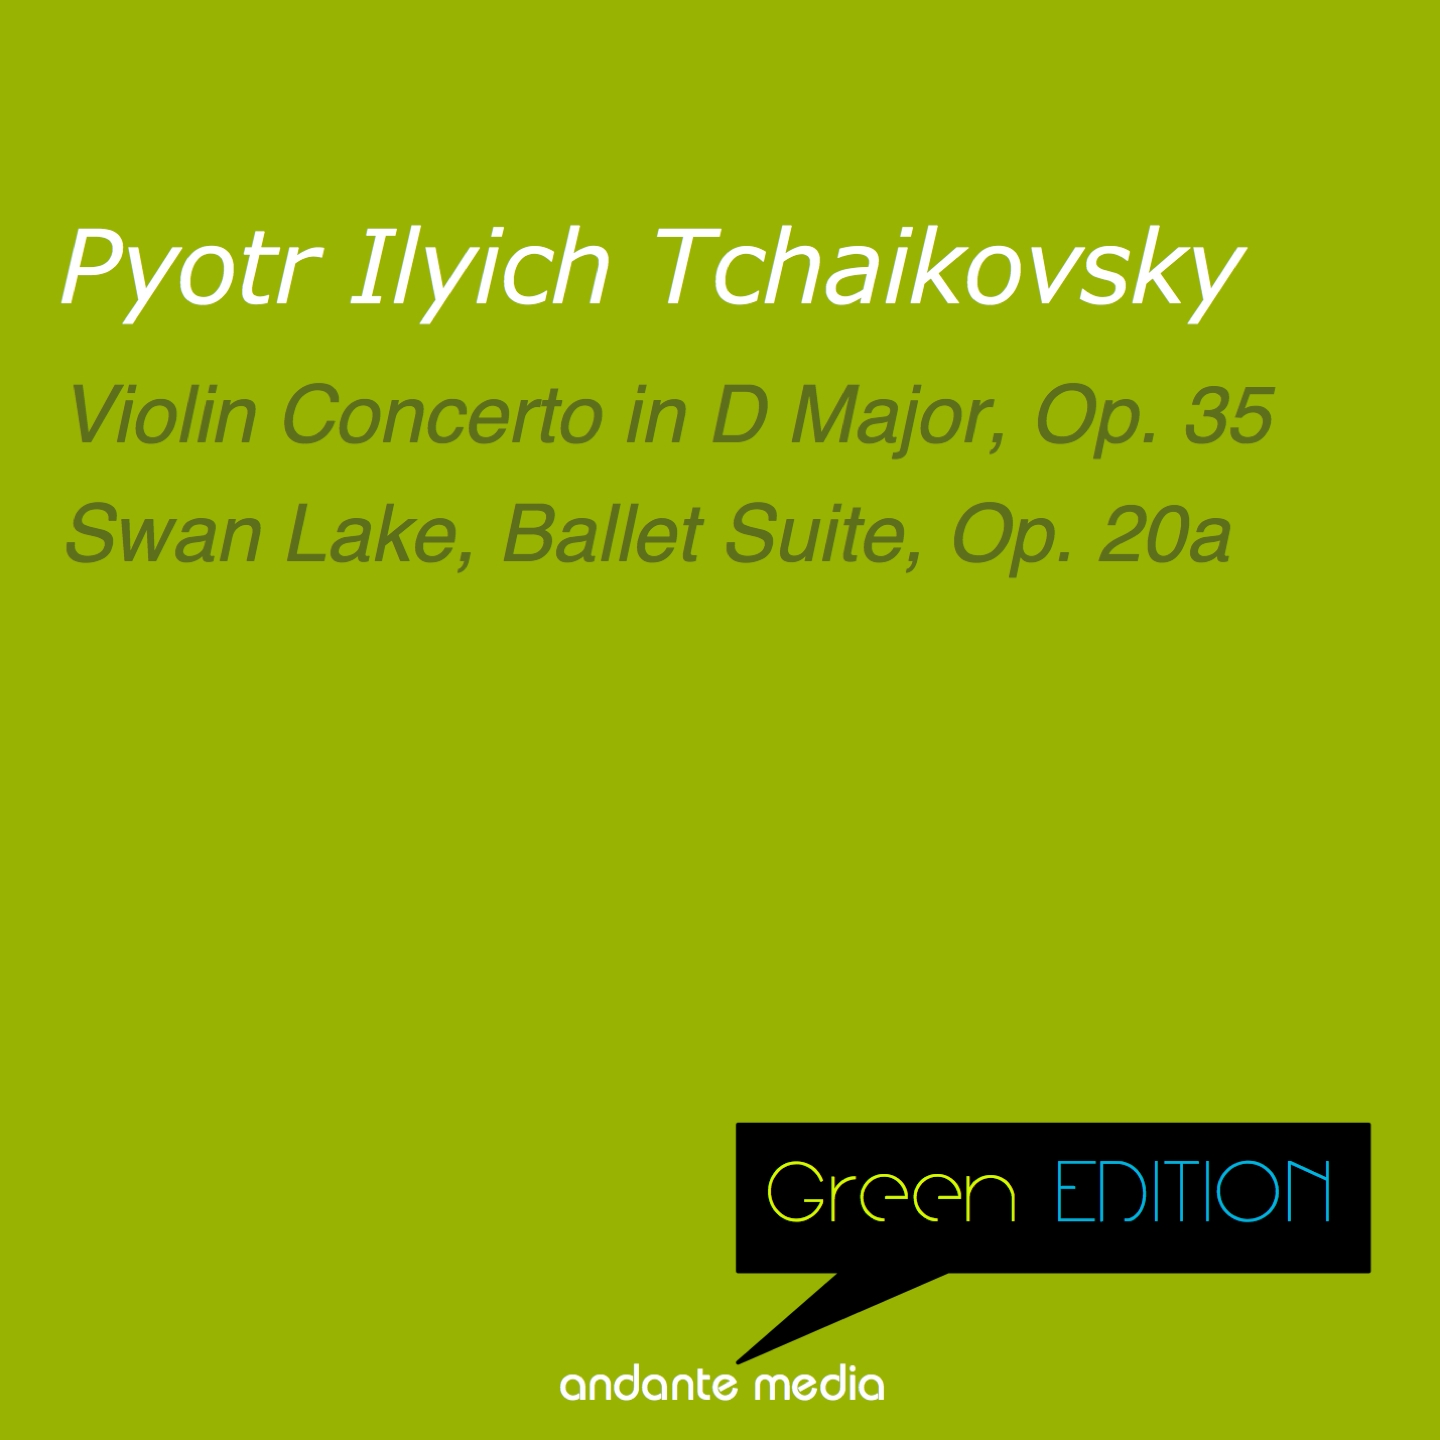 Swan Lake Suite, Op. 20a: Valse